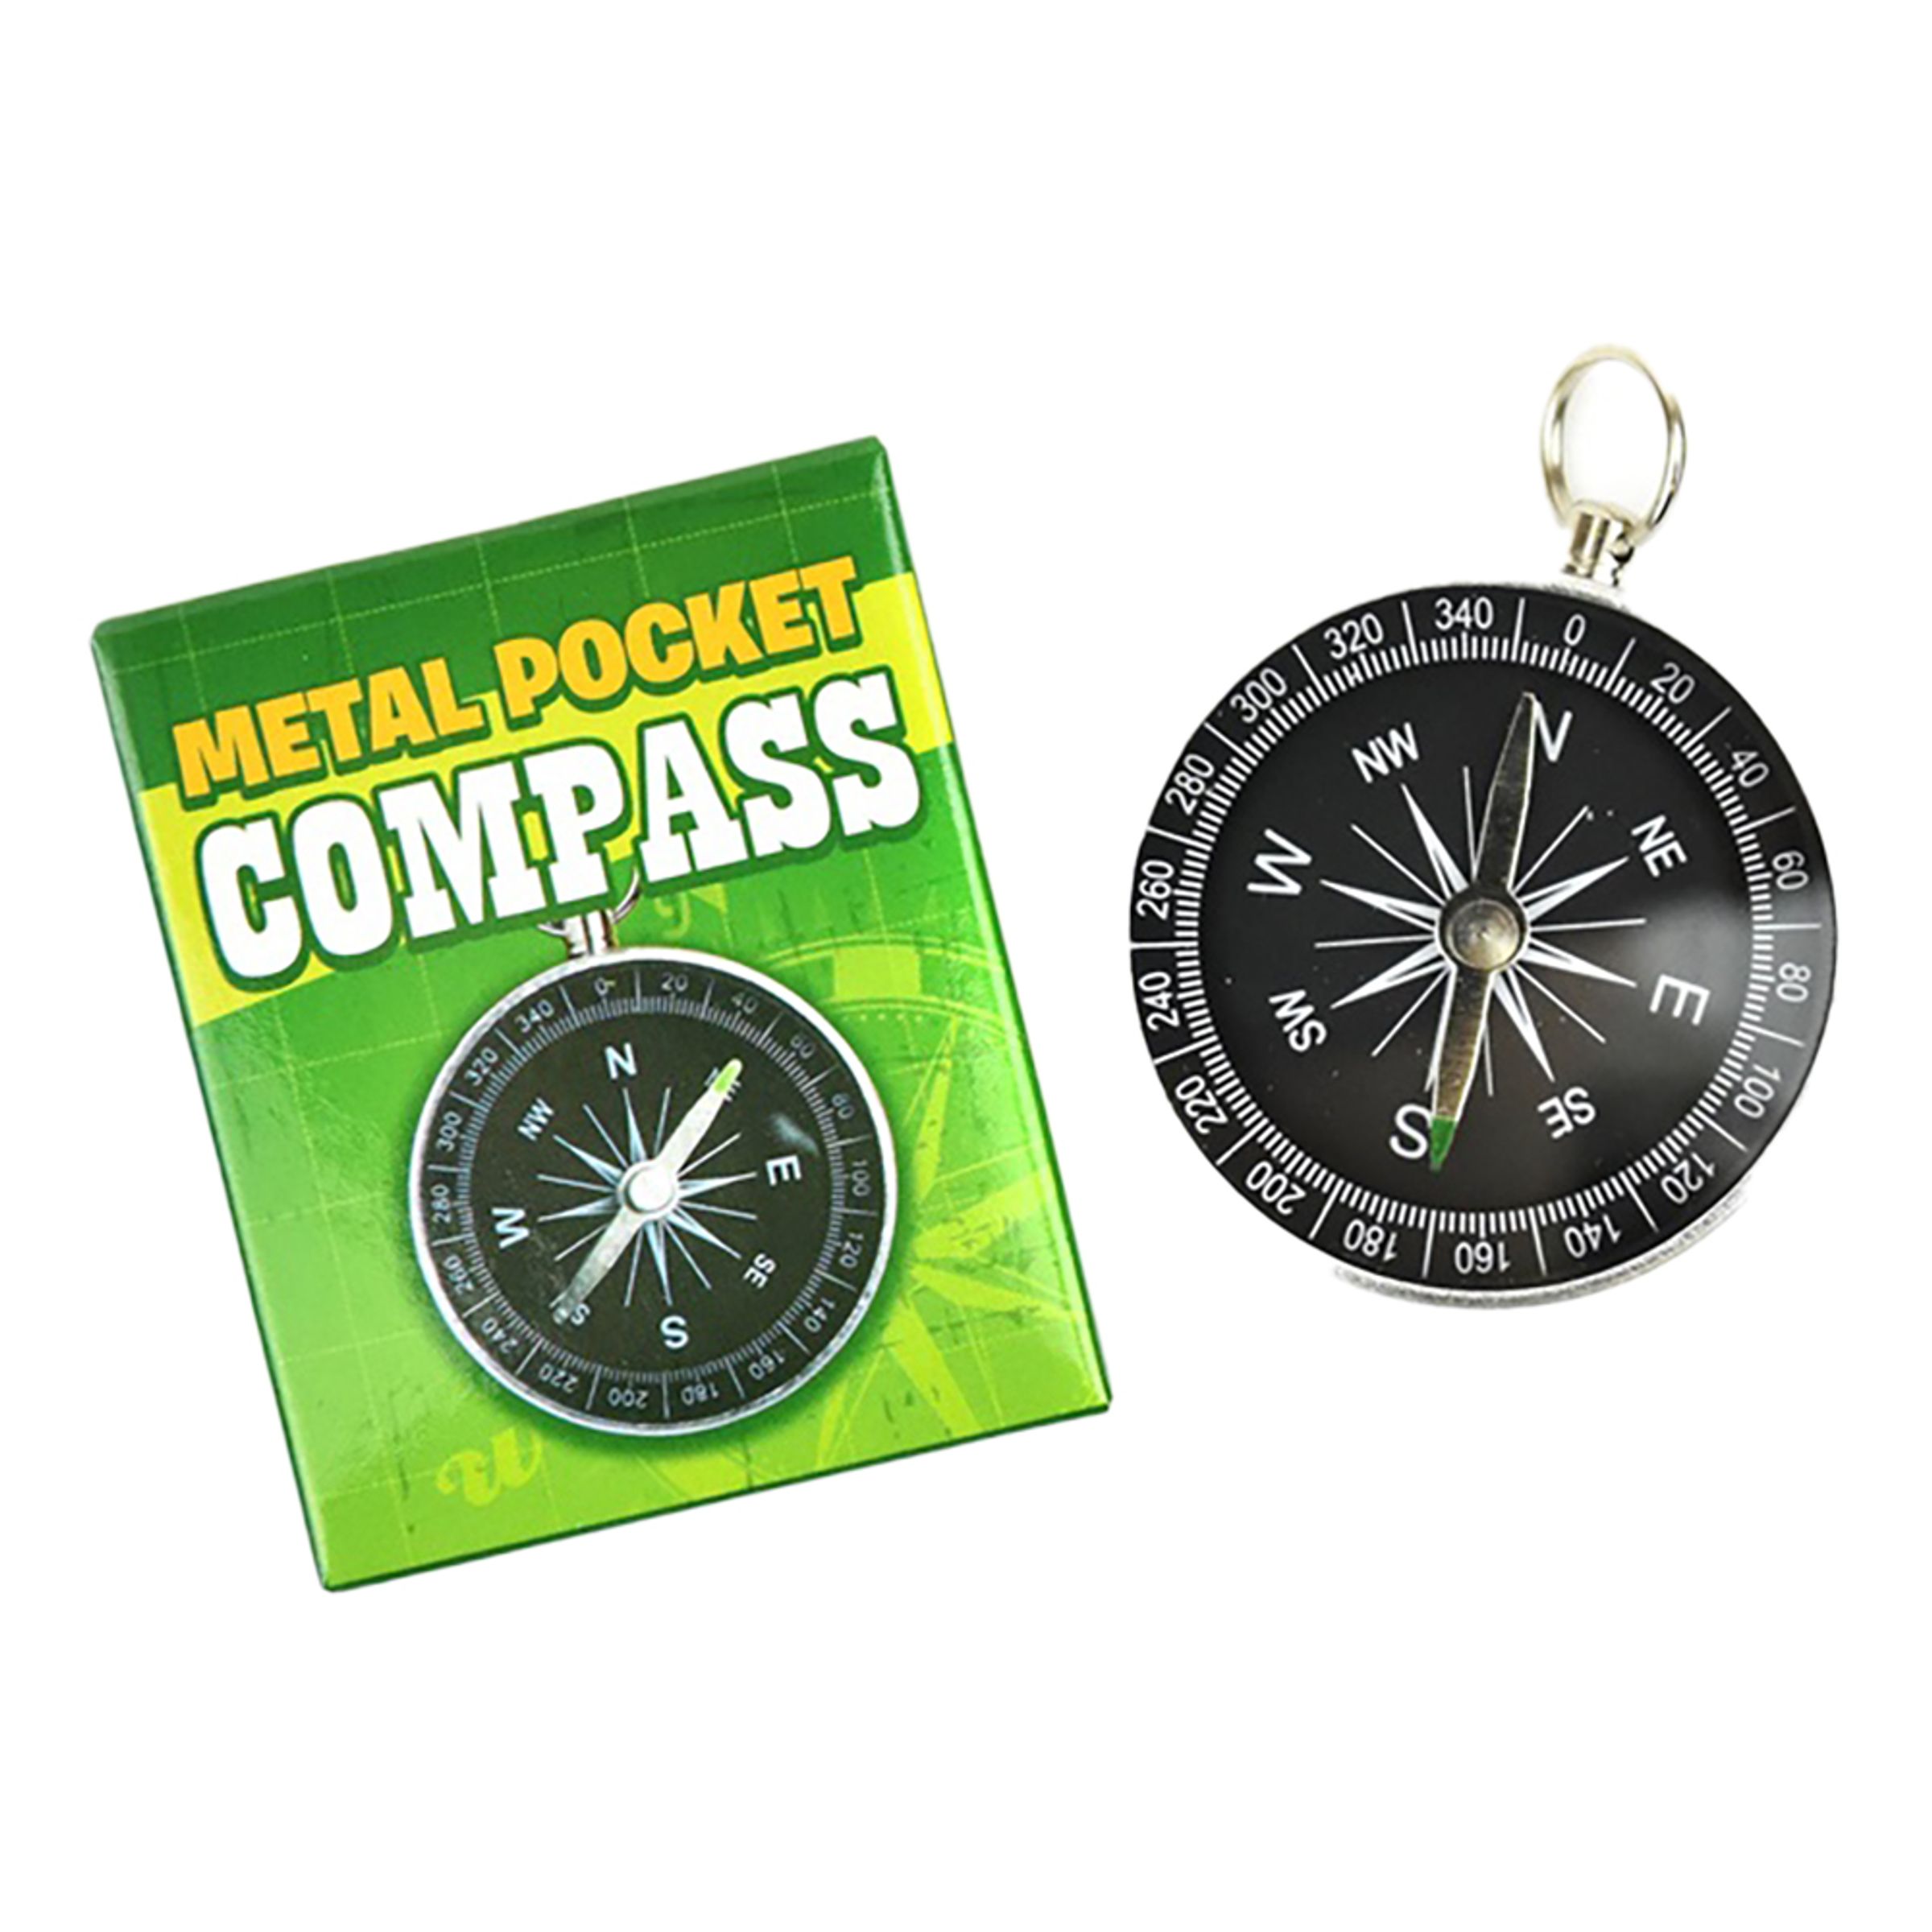 Läs mer om Fickkompass i Metall